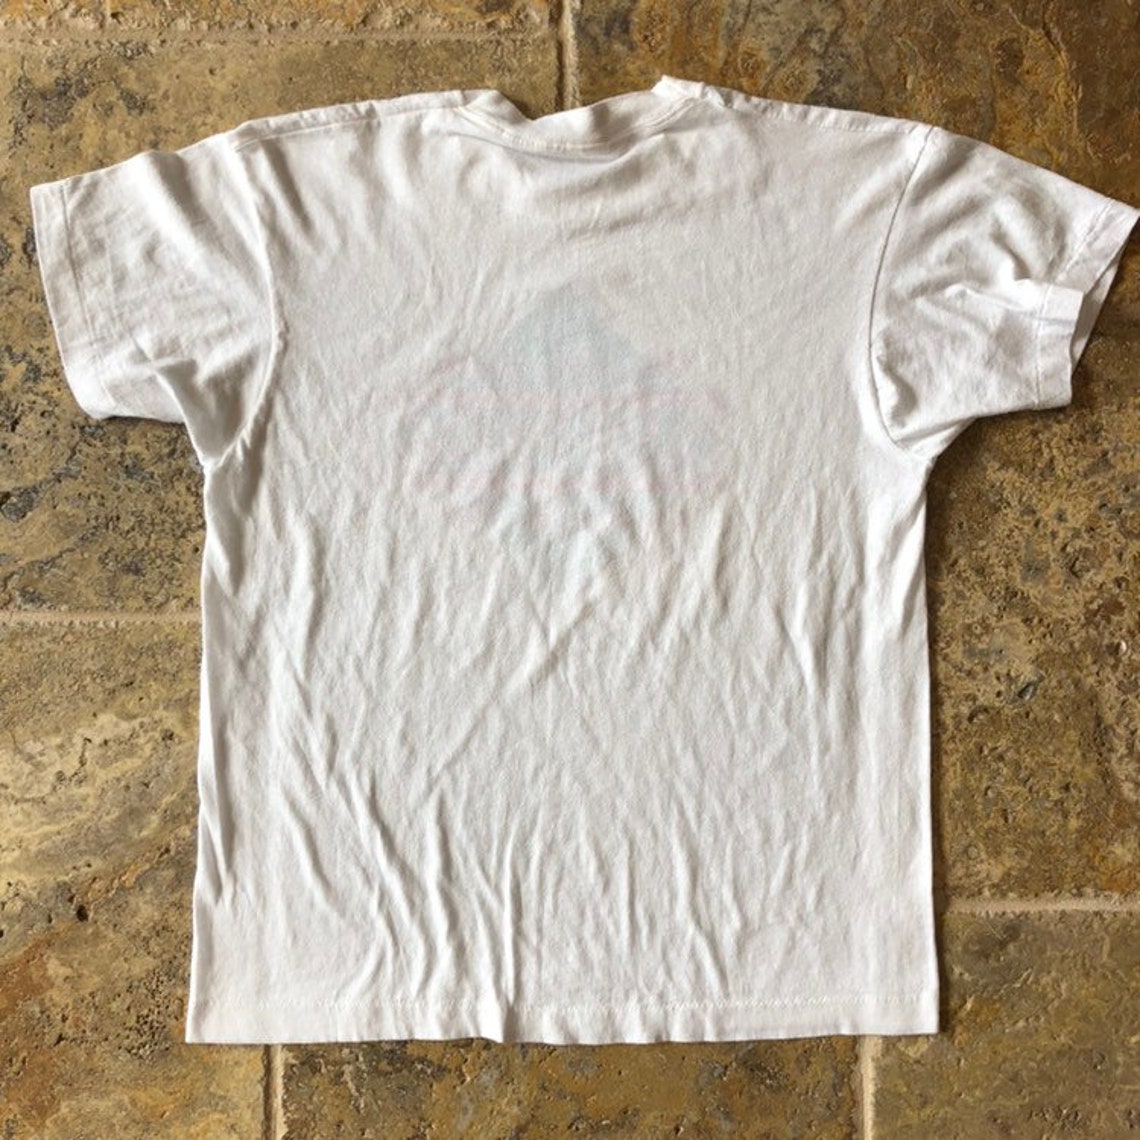 Vintage Club Pride Drug Free Youth T-Shirt 80s | Etsy